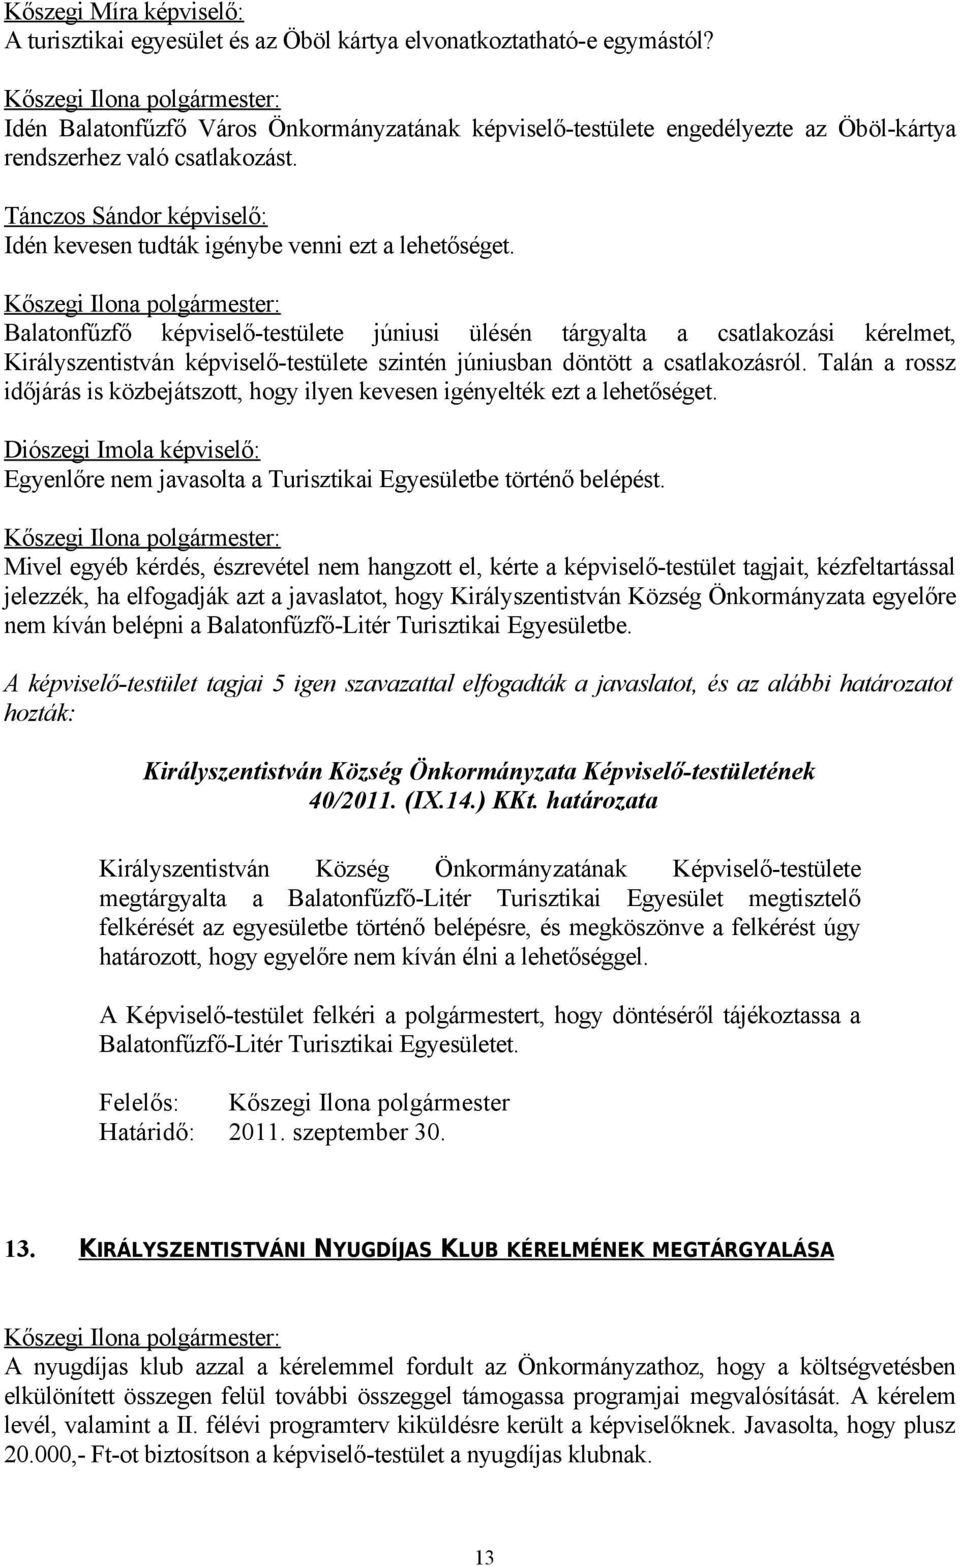 Balatonfűzfő képviselő-testülete júniusi ülésén tárgyalta a csatlakozási kérelmet, Királyszentistván képviselő-testülete szintén júniusban döntött a csatlakozásról.